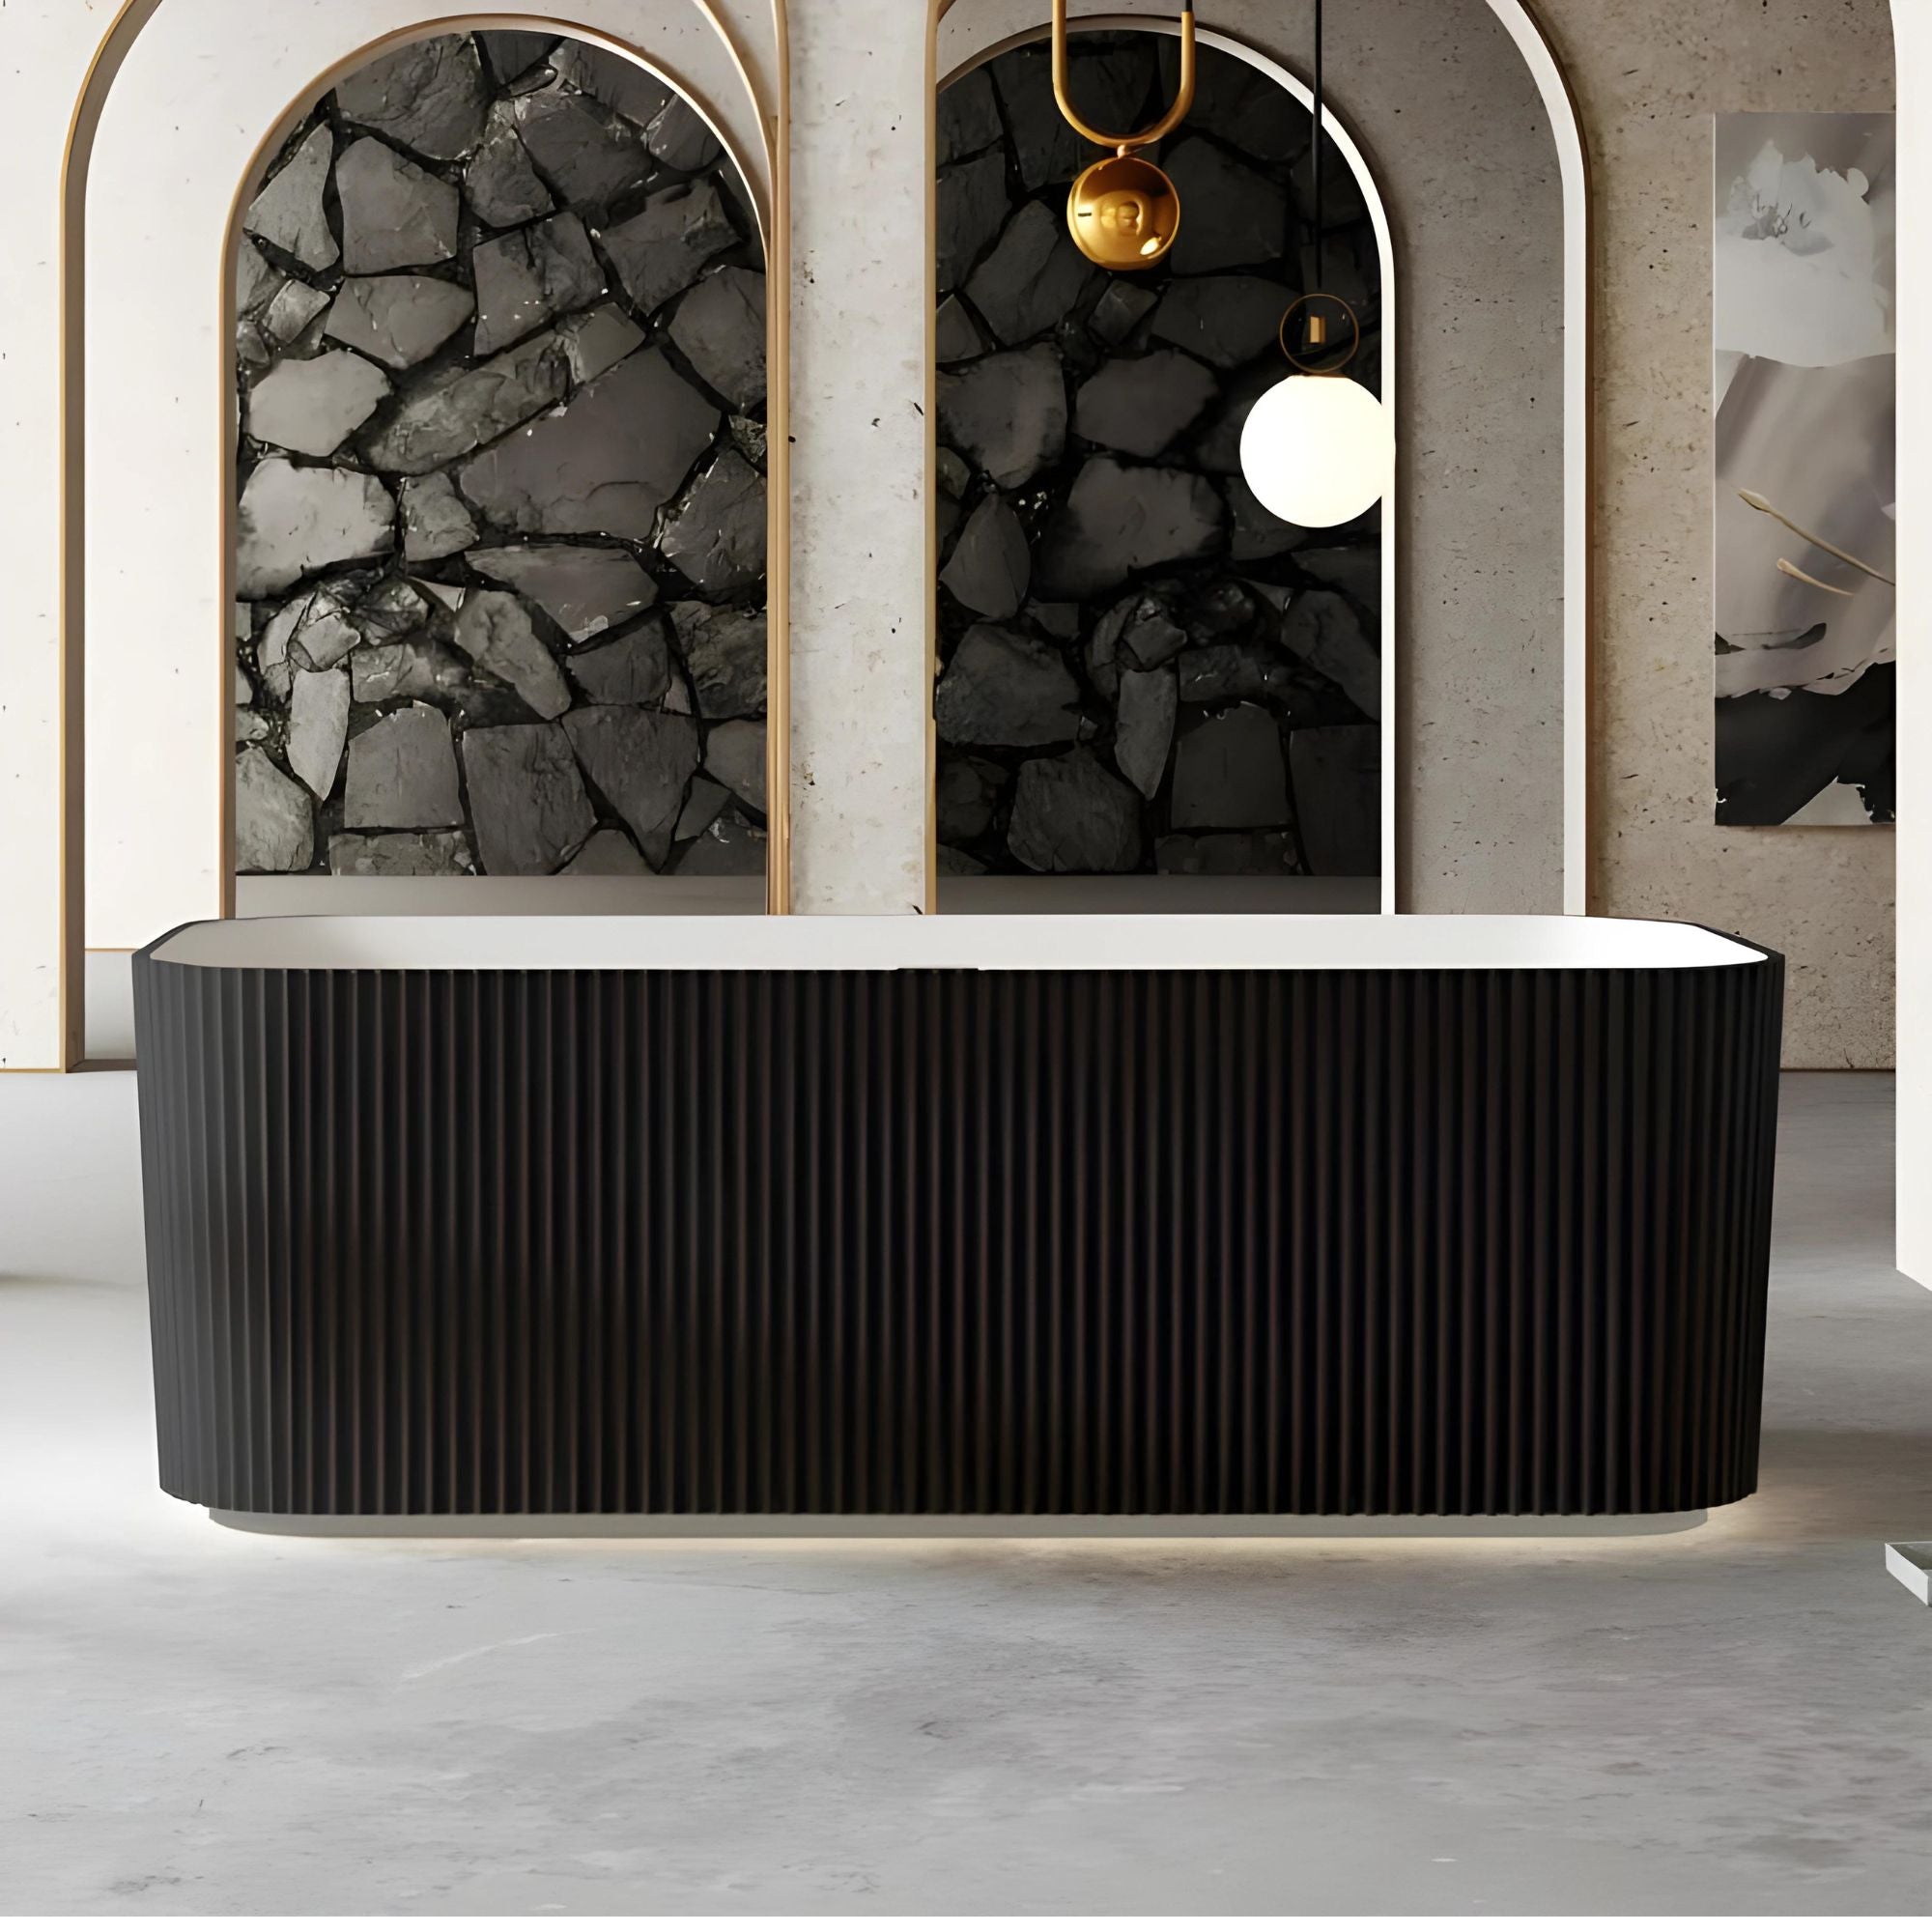 RIVA MILANO V-GROOVE FREESTANDING BATHTUB MATTE WHITE AND BLACK 1500MM